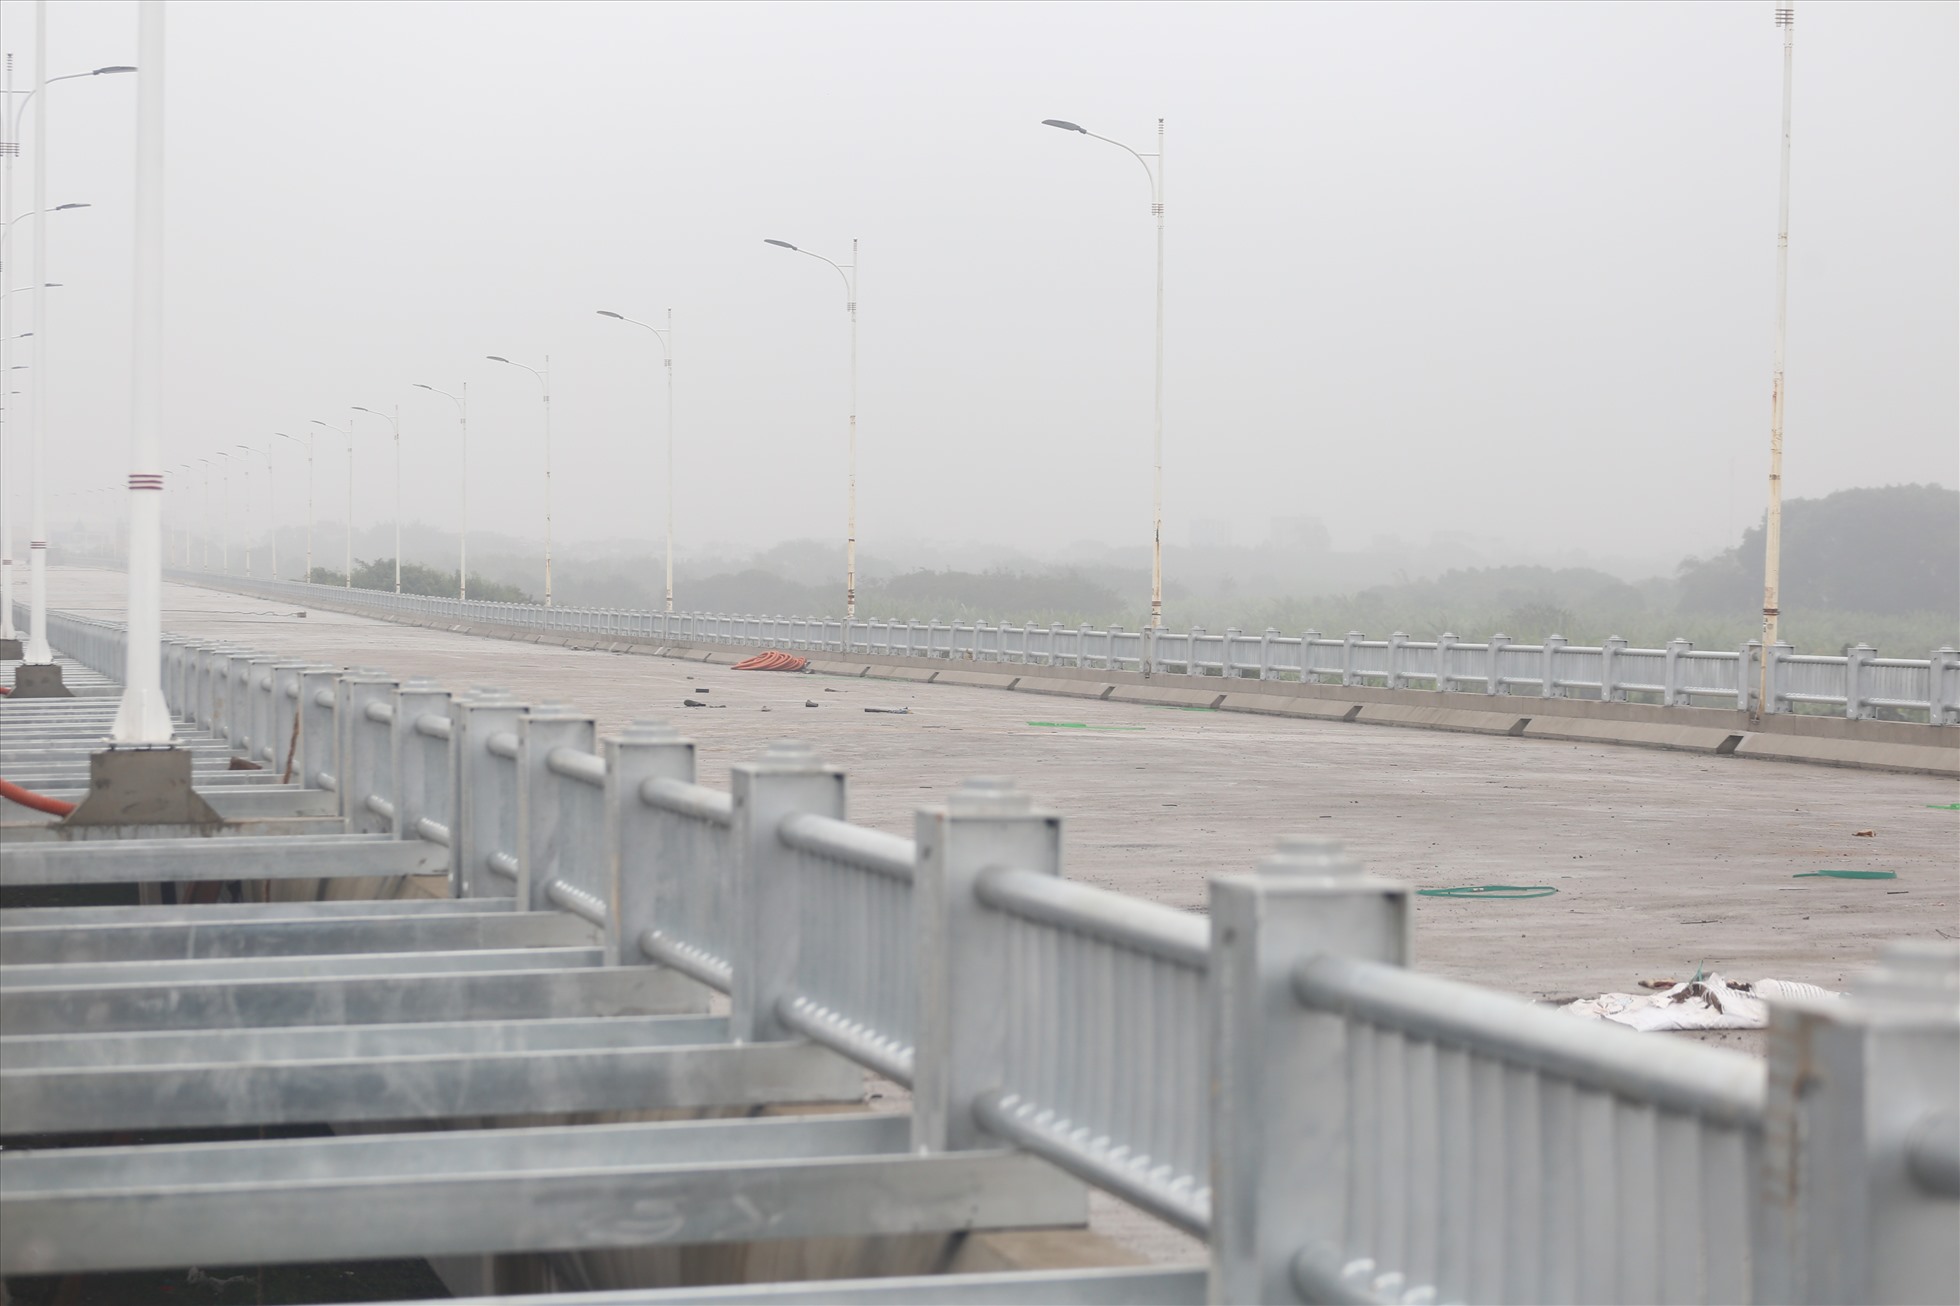 Sau khi hoàn thành giai đoạn 2, Dự án cầu Vĩnh Tuy sẽ có chiều rộng mặt cắt ngang lớn nhất Hà Nội với 8 làn xe ô tô (40m). Ảnh: Vĩnh Hoàng